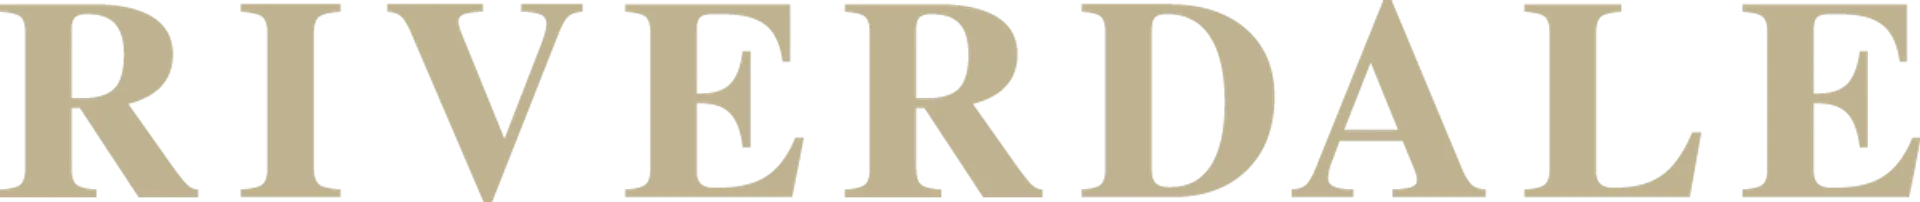 RIVERDALE logo